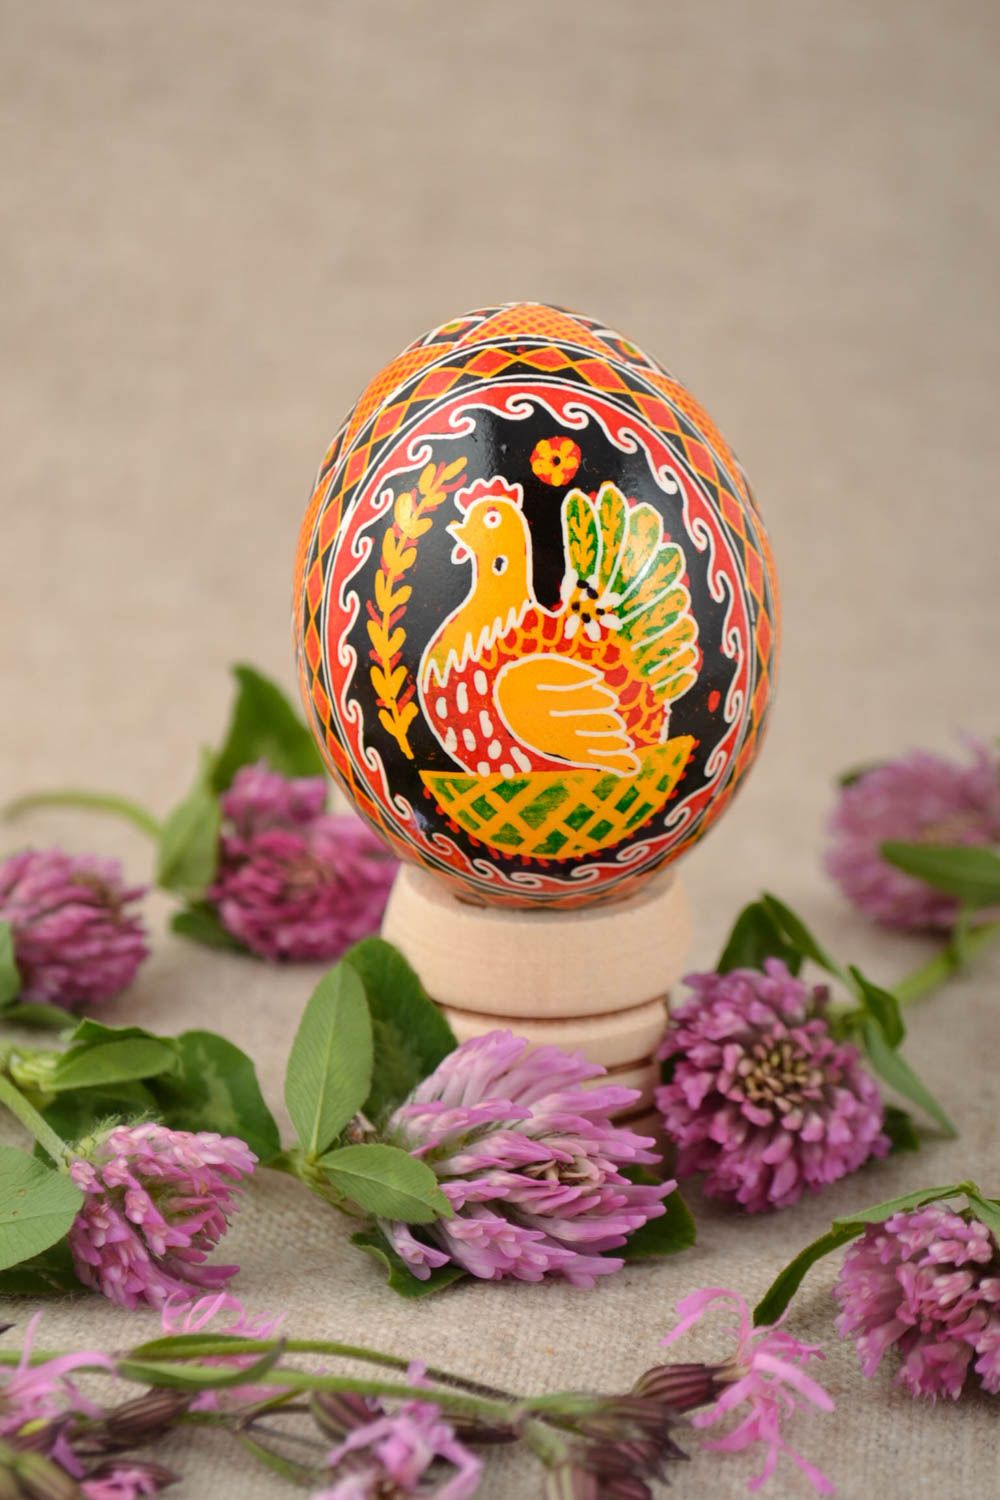 Расписное пасхальное яйцо куриное с изображением курочки цветное ручной работы фото 1